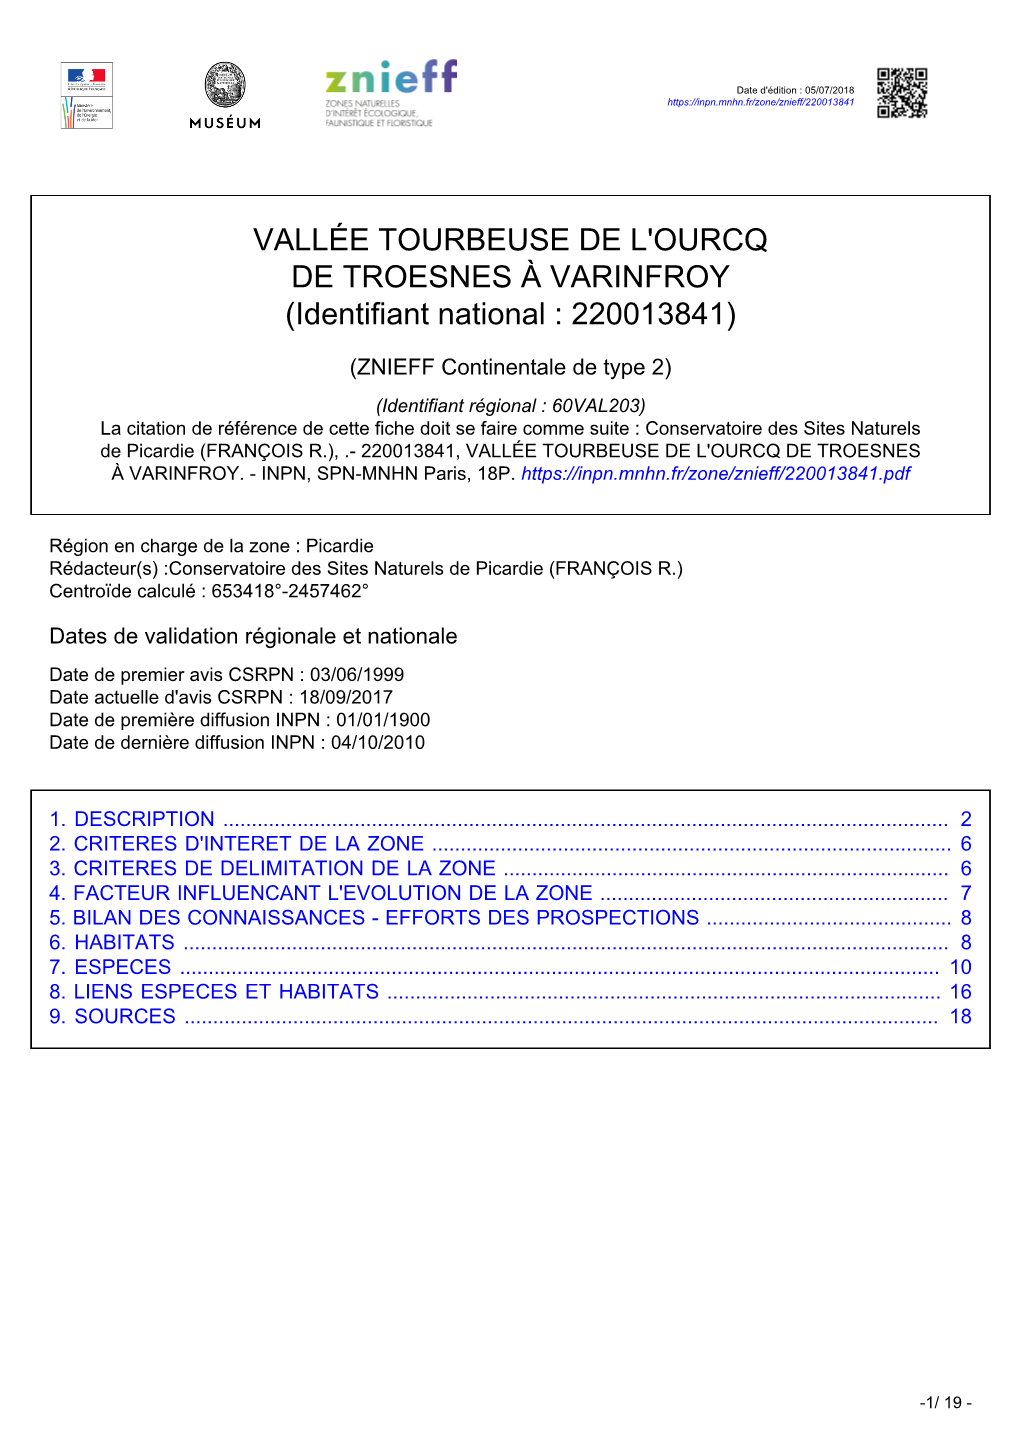 VALLÉE TOURBEUSE DE L'ourcq DE TROESNES À VARINFROY (Identifiant National : 220013841)